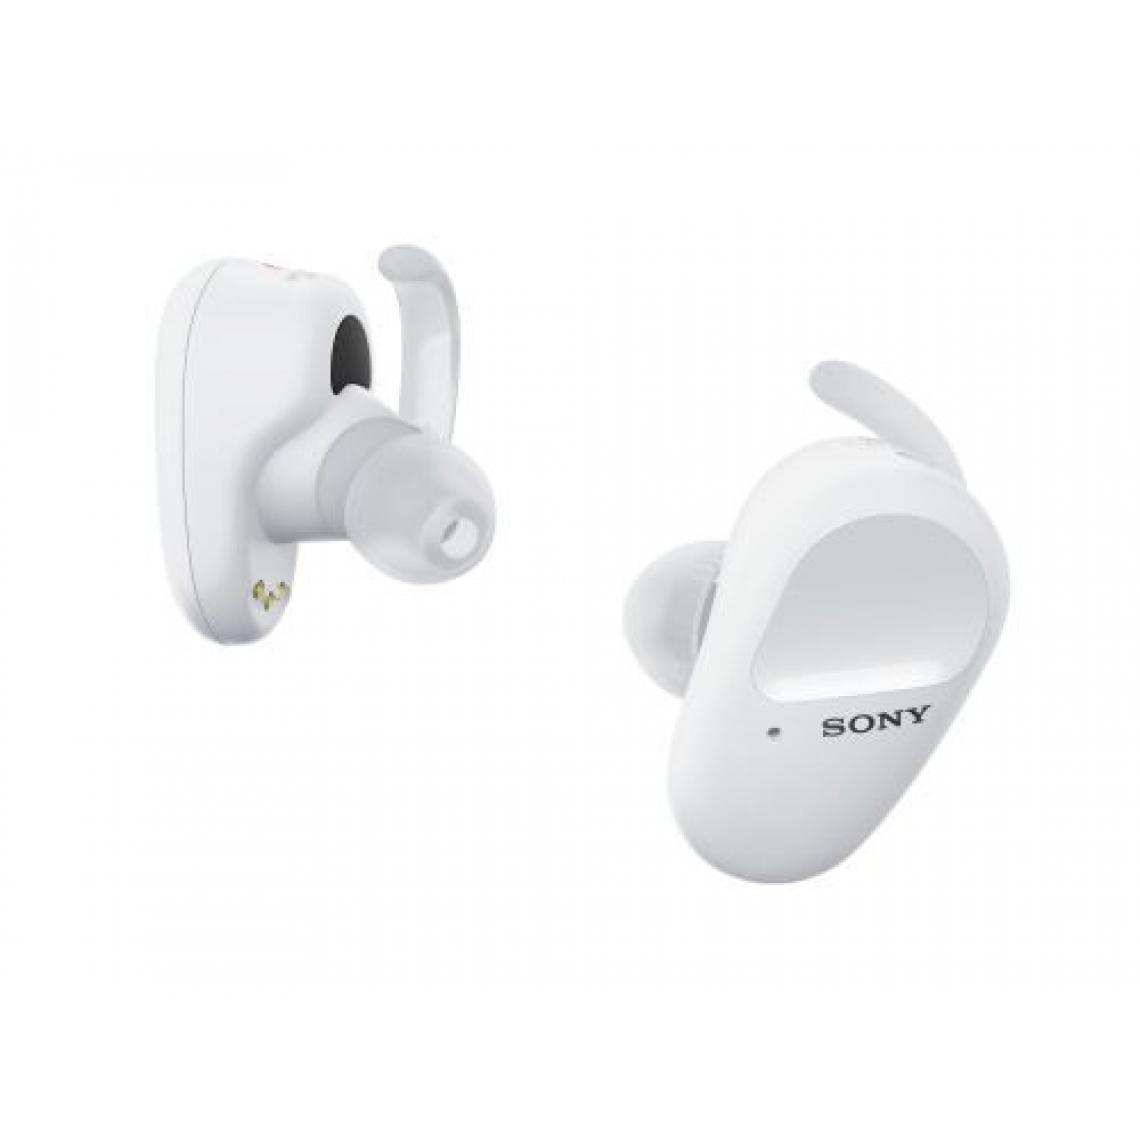 Sony - Ecouteurs sans fil True Wireless Sport Sony WFSP800N à réduction de bruit Blanc - Casque